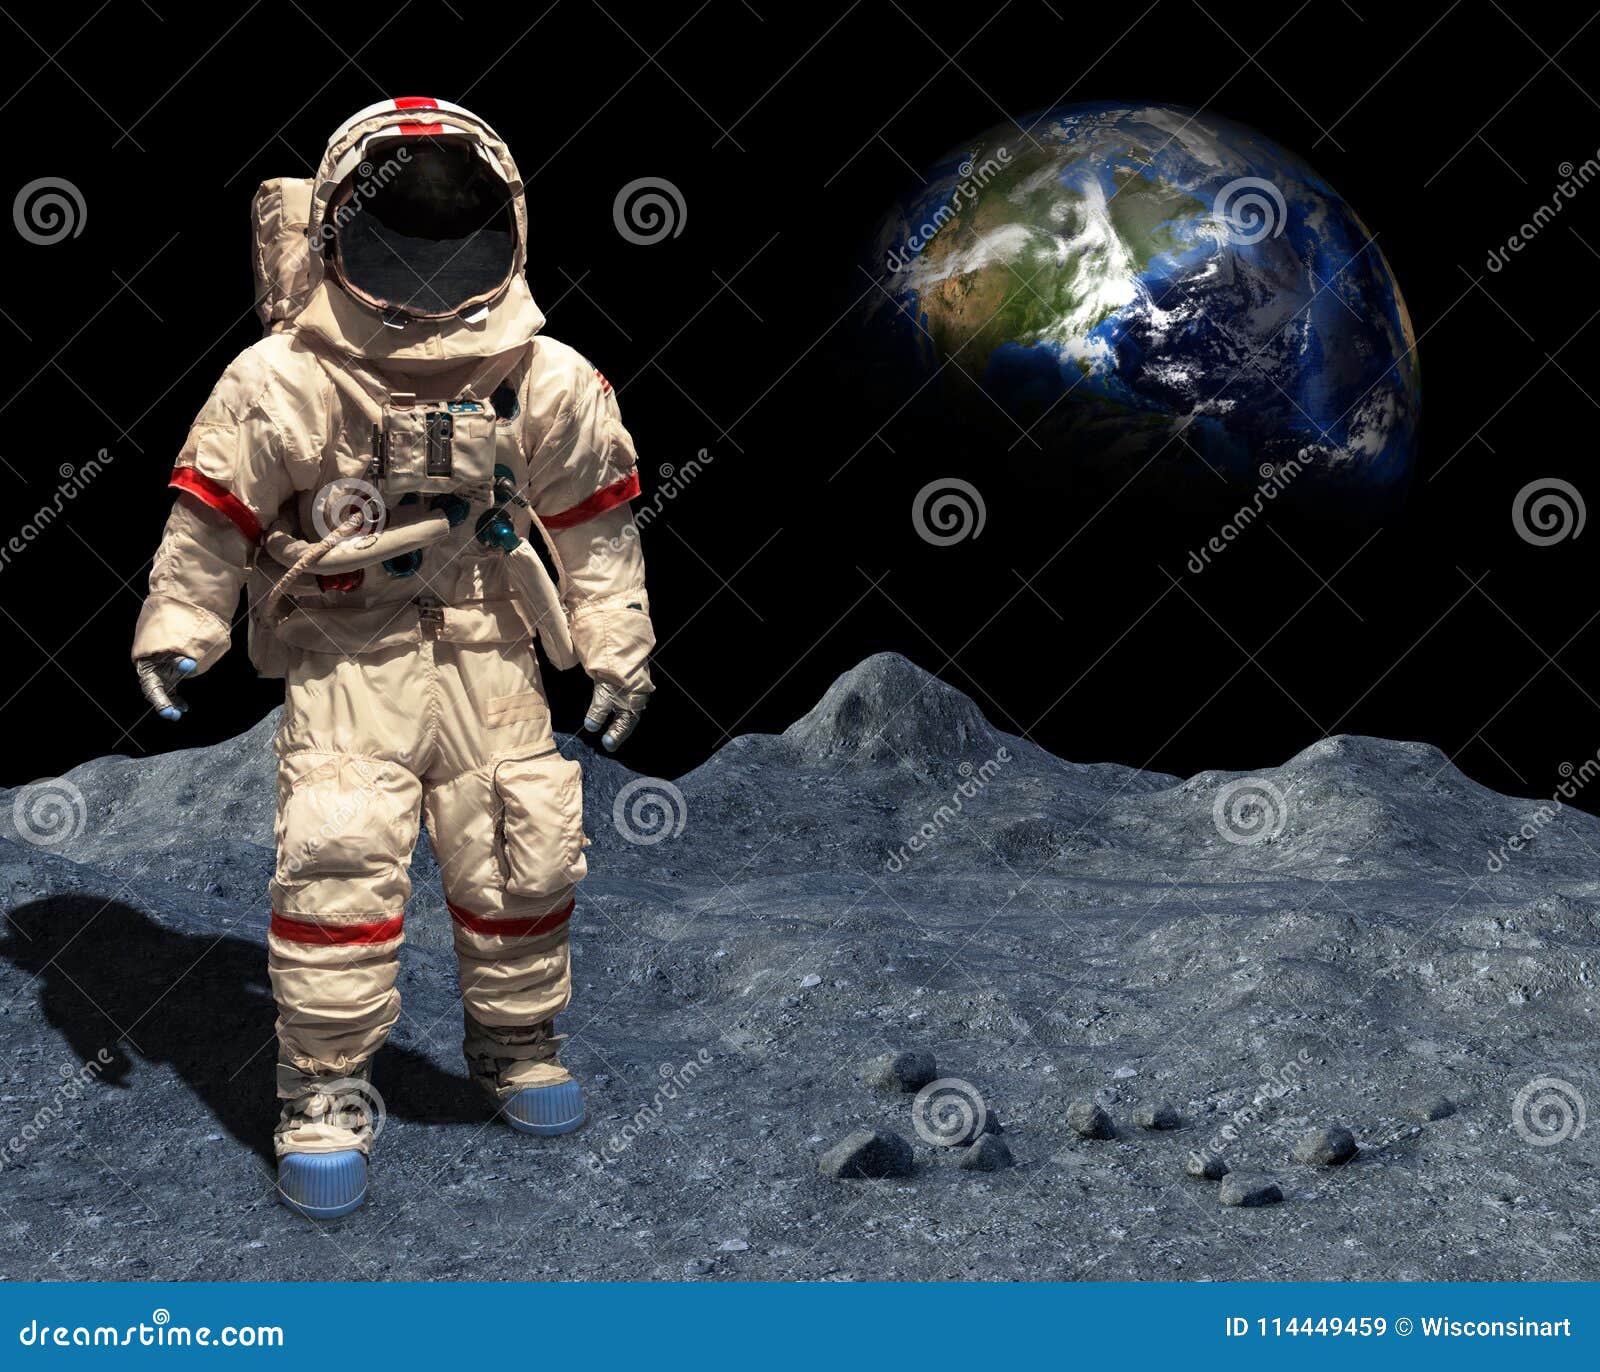 moon landing, astronaut walk, space, lunar surface